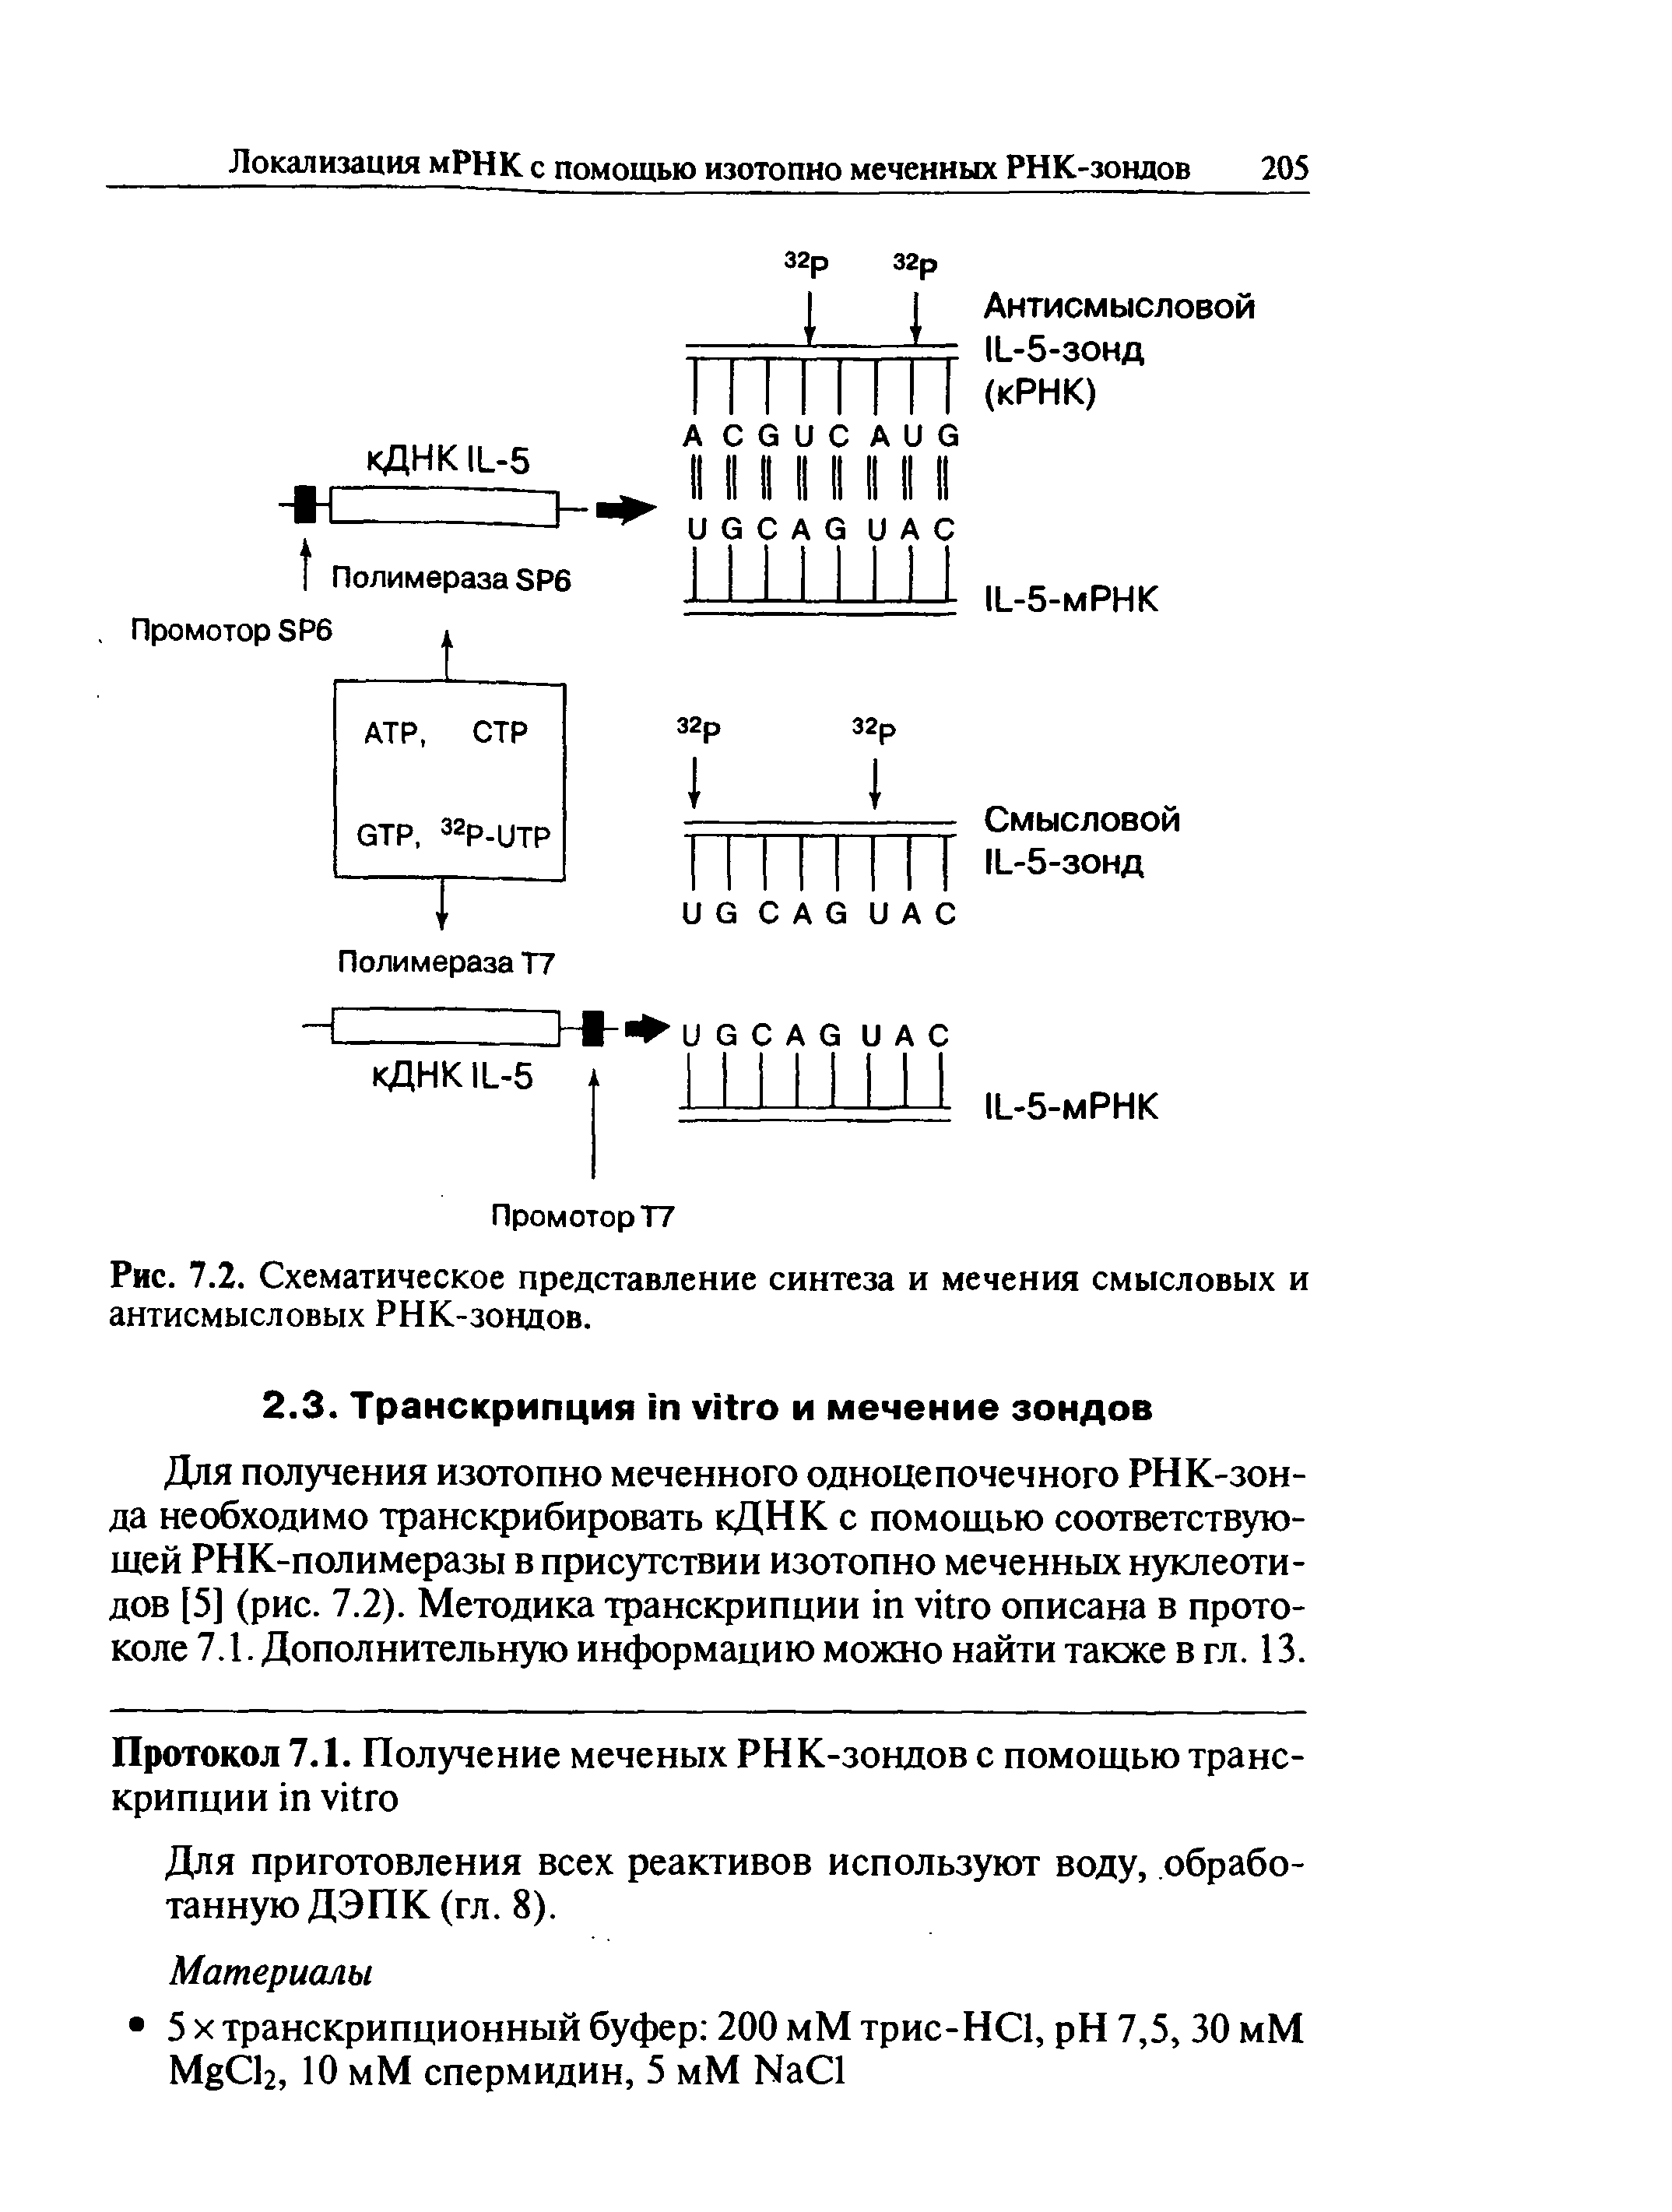 Рис. 7.2. Схематическое представление синтеза и мечения смысловых и антисмысловых РНК-зондов.